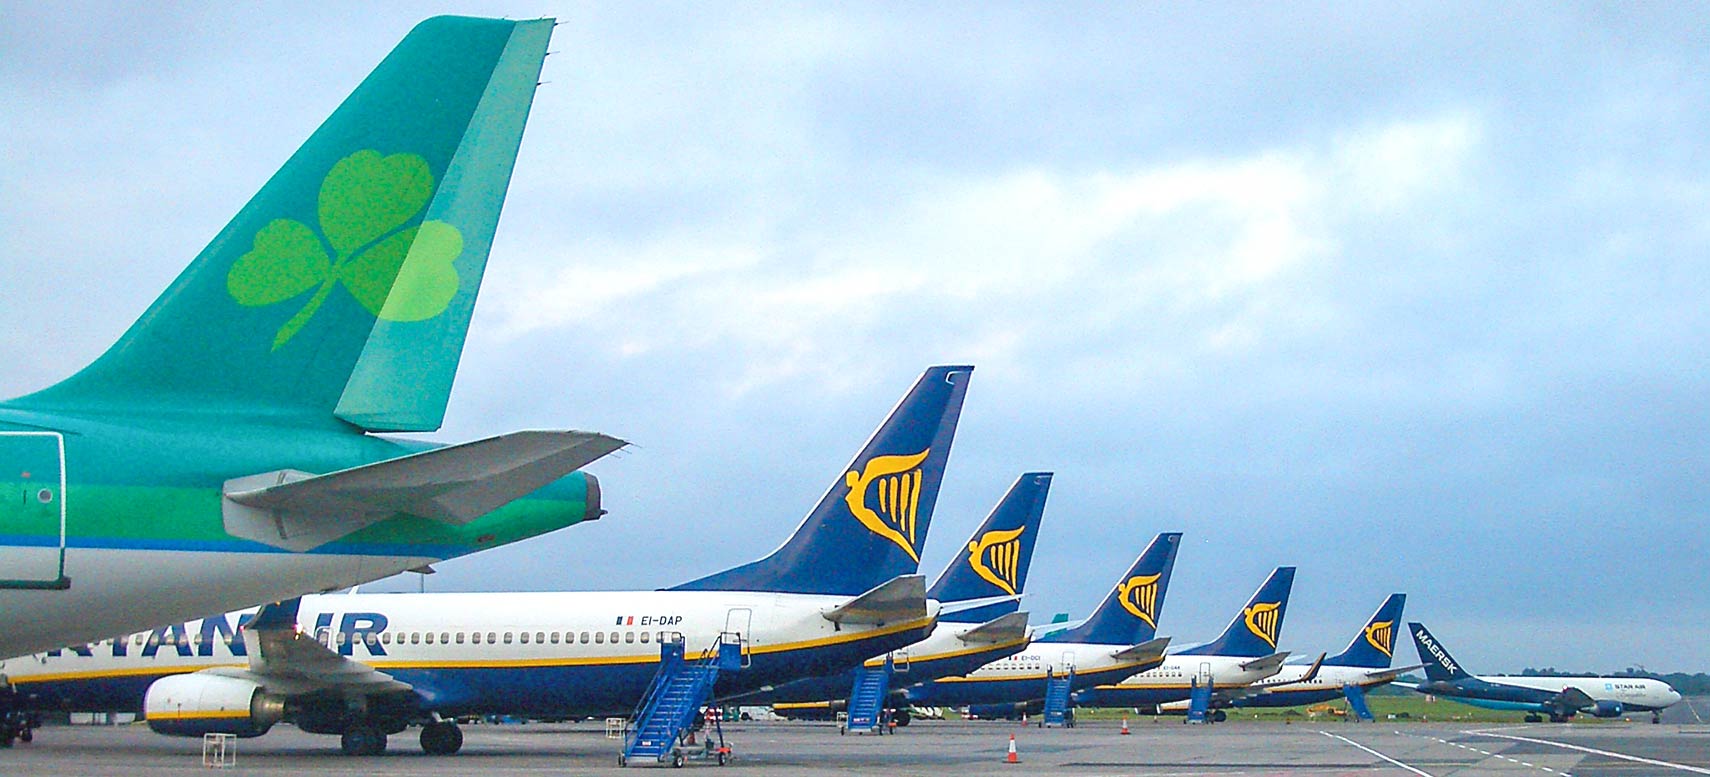 Aer Lingus plane and several Ryanair aircraft at Dublin Airport